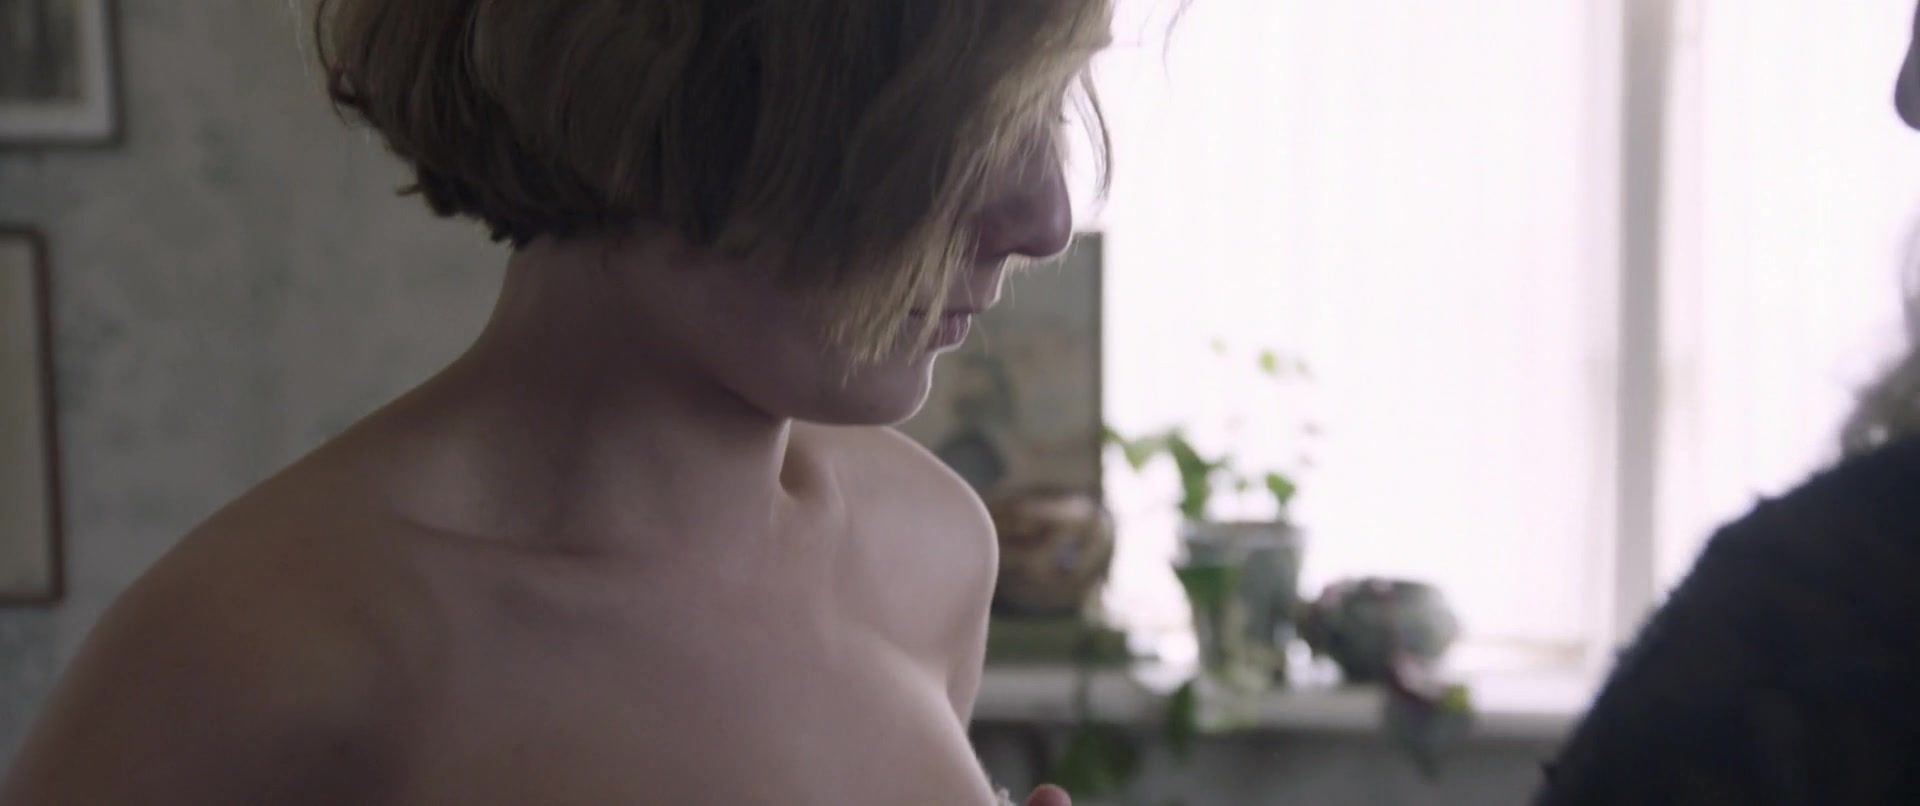 Femboy Alba August nude - Unga Astrid (2018) Hooker